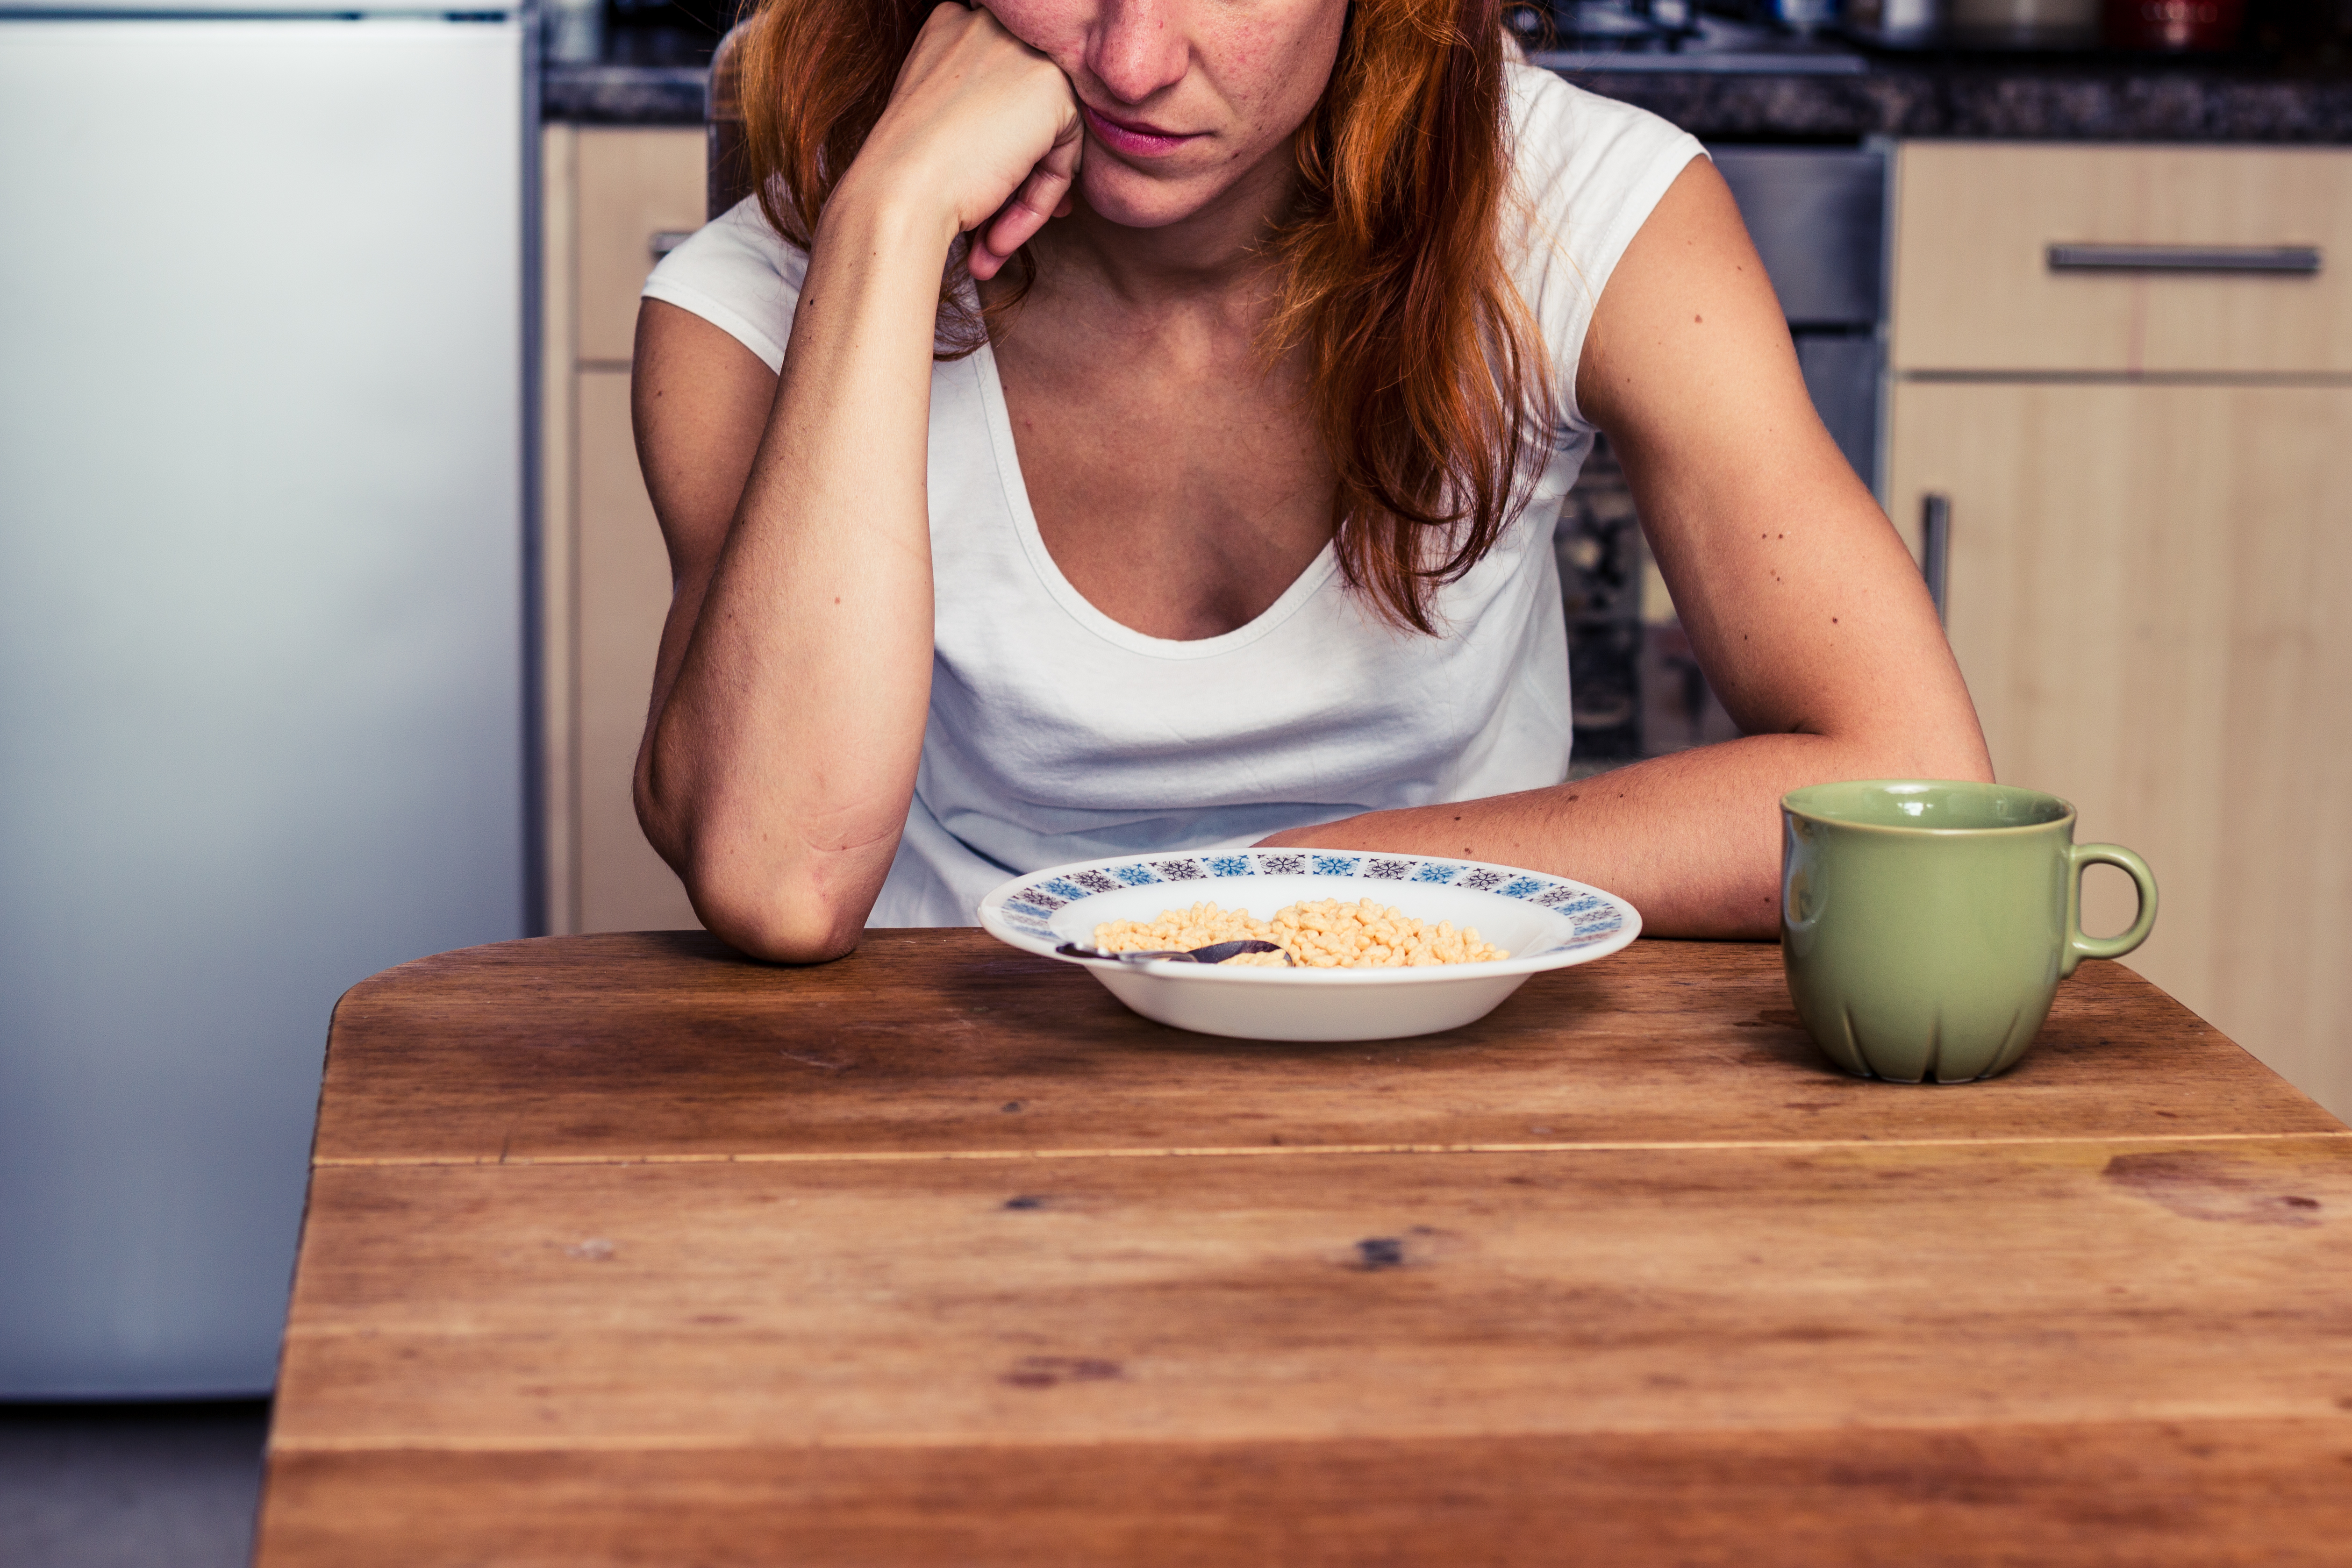 Der Frau wurde vorgeworfen, dass sie die Speisen ihrer Schwiegermutter nicht essen wollte, obwohl sie krank war. | Quelle: Shutterstock